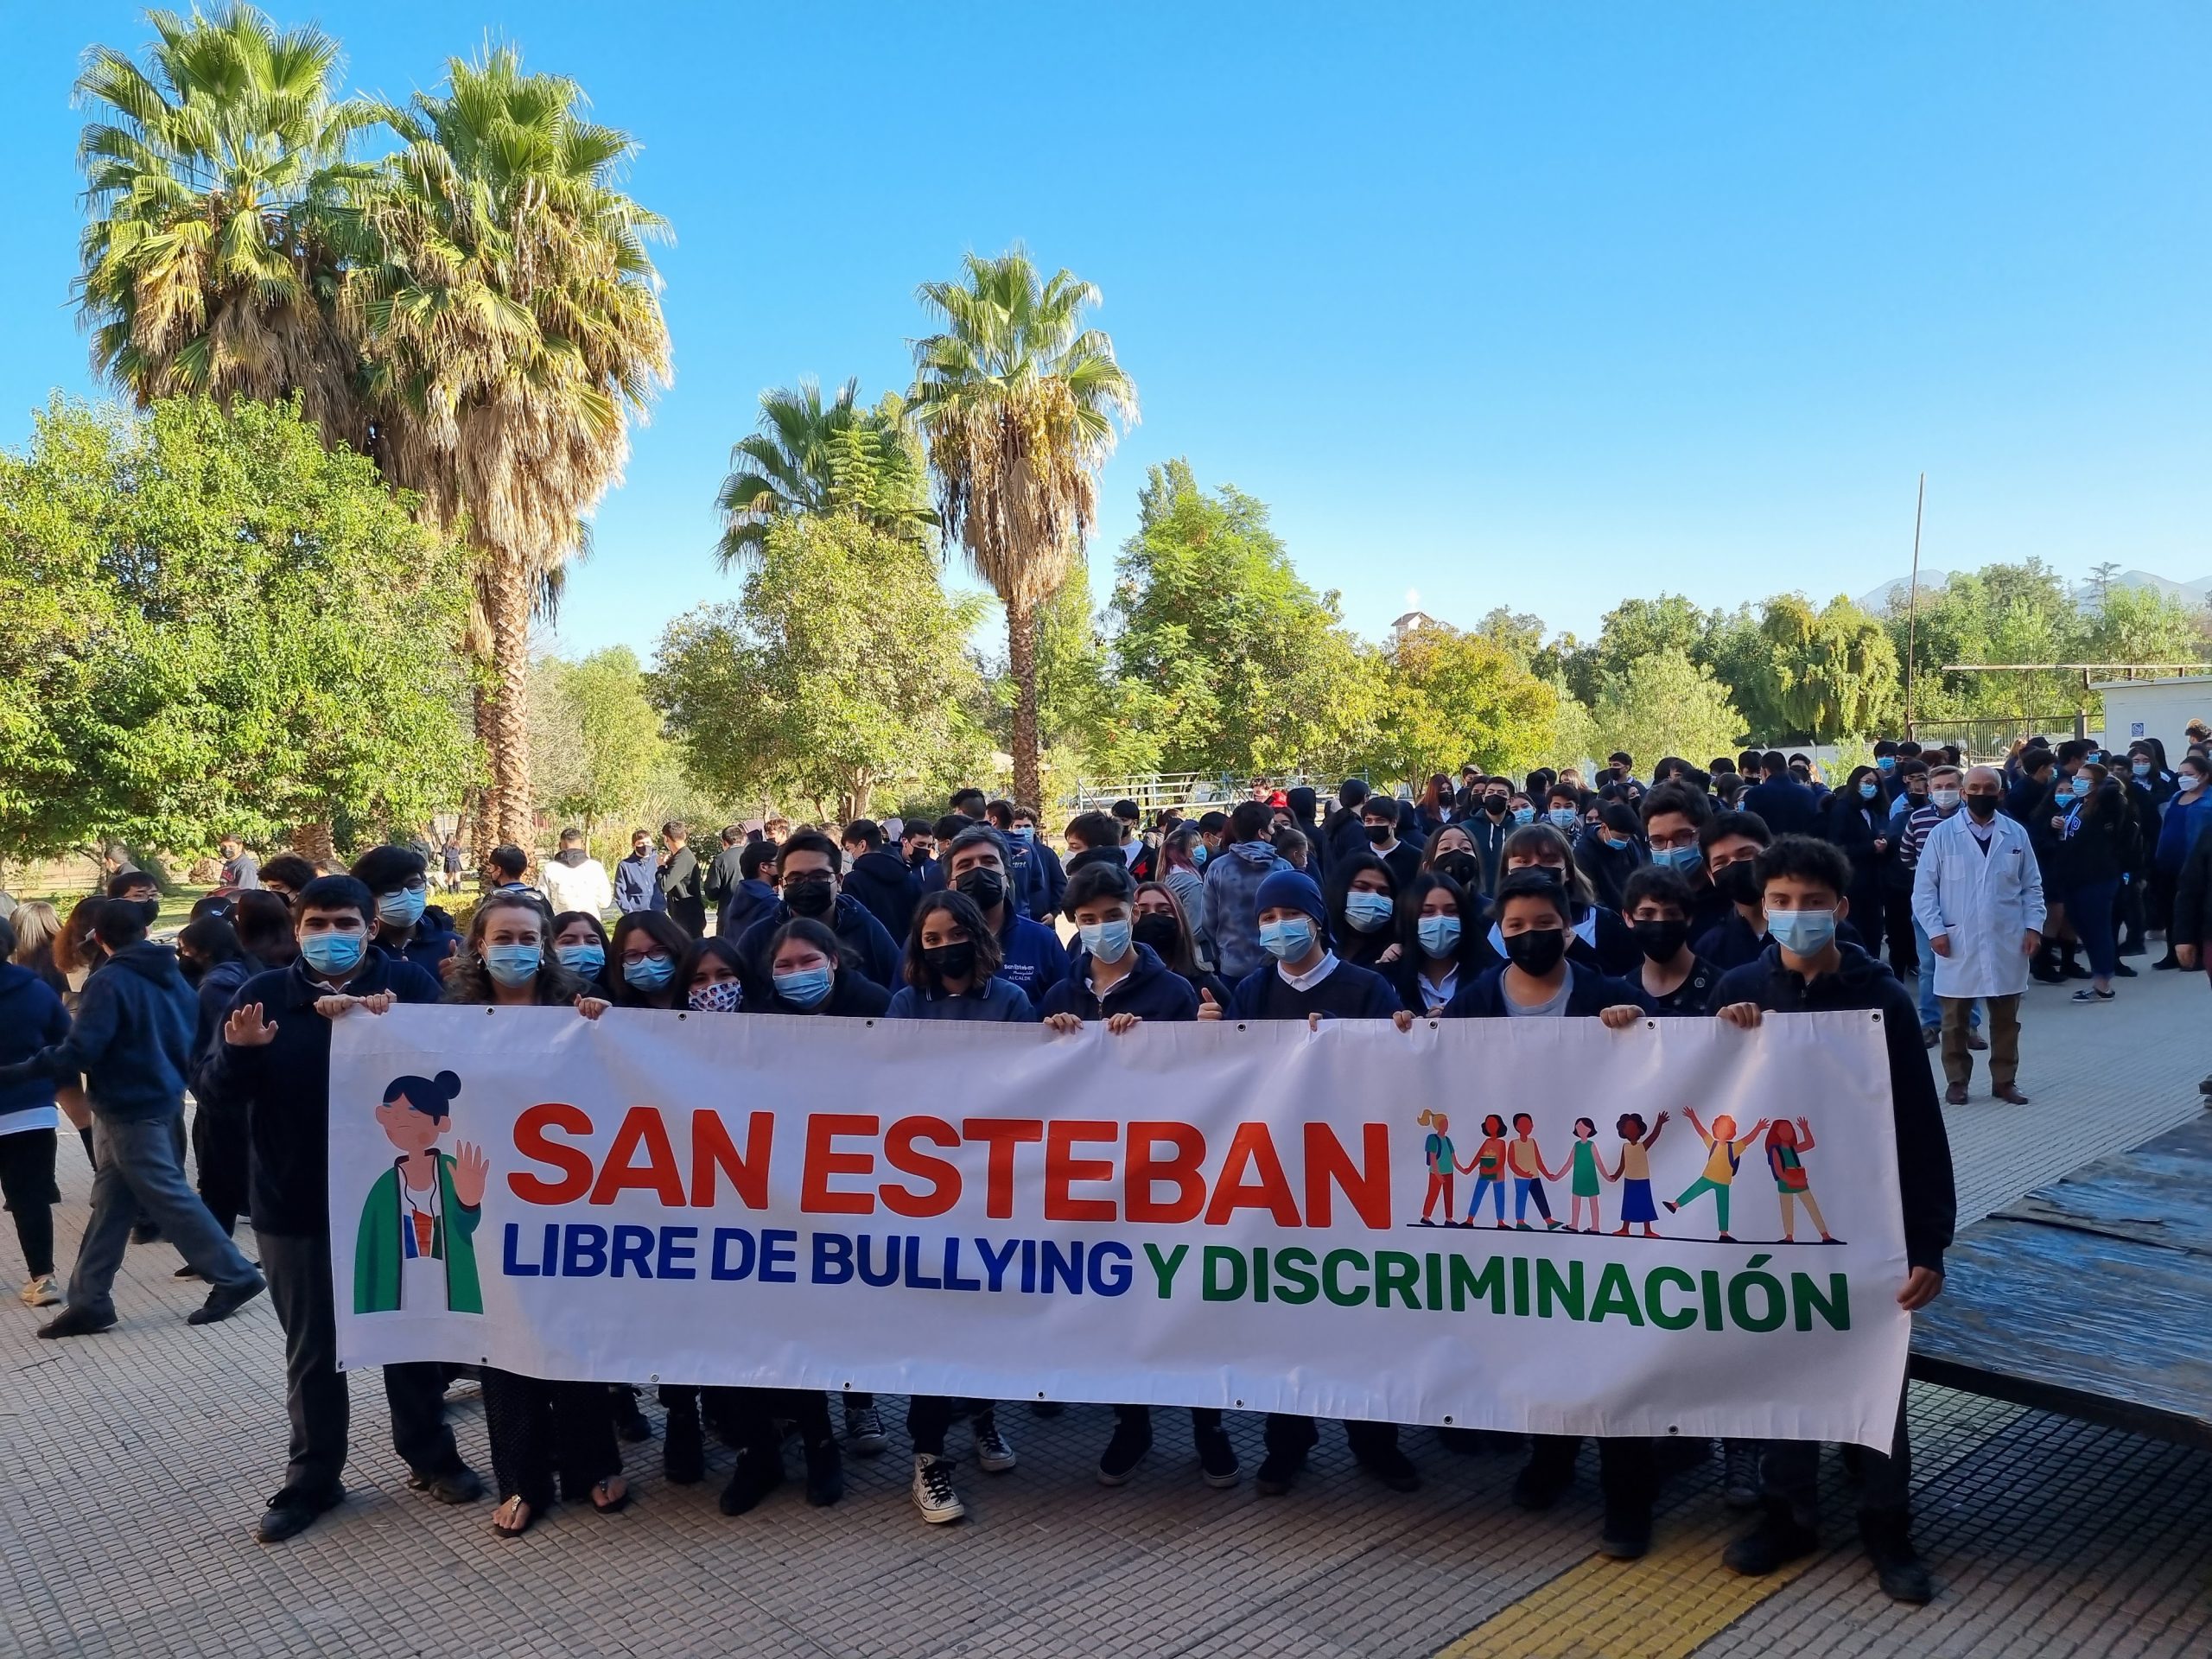 EDUCACIÓN:  San Esteban libre de bullying y discriminación”: Municipio lanza campaña para generar espacios de respeto y diálogo en establecimientos educacionales de la comuna